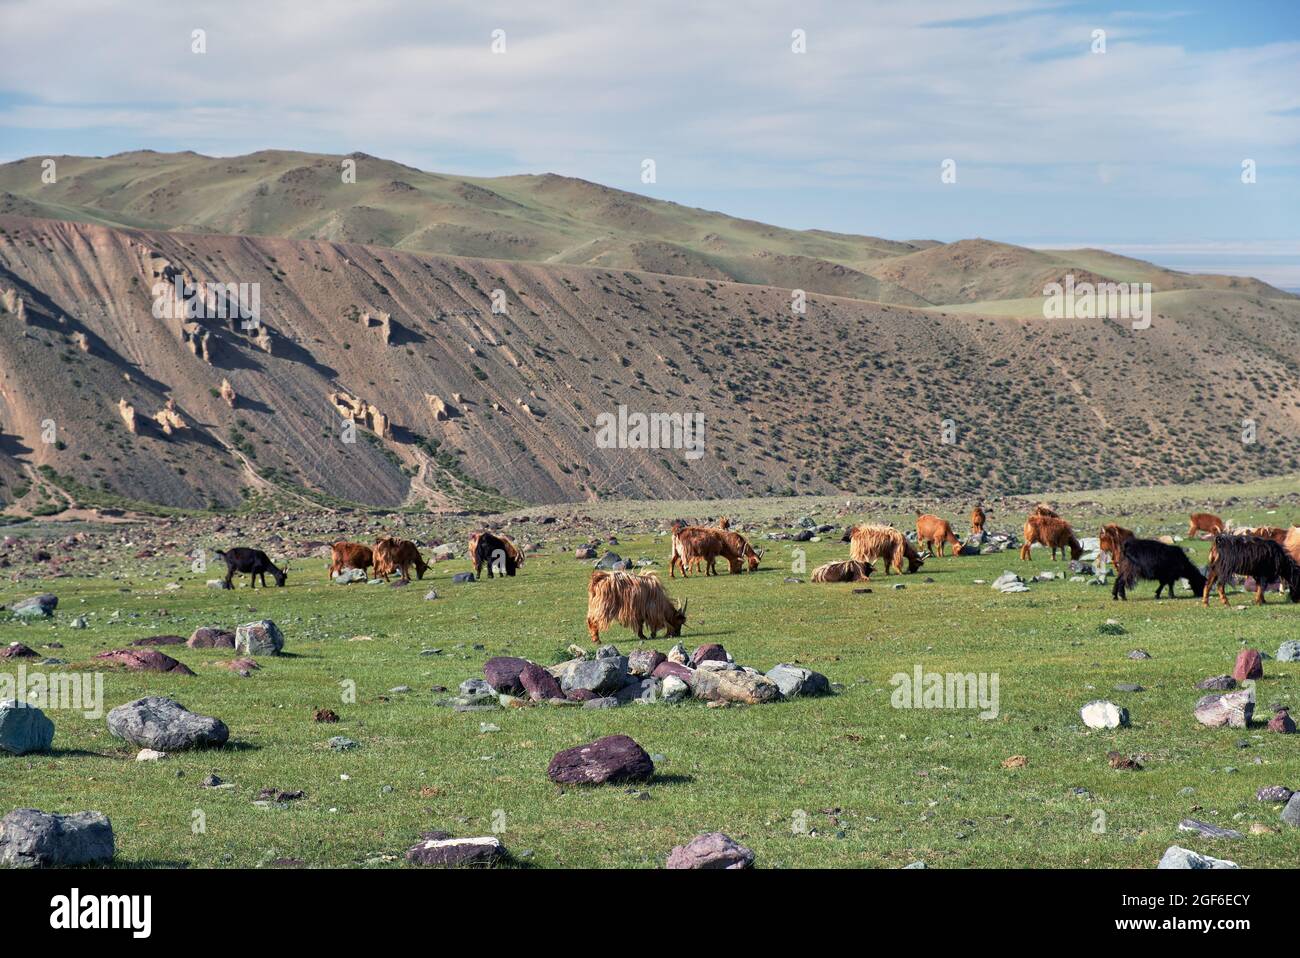 Las cabras pastan en pastos de estepa de montaña en el límite natural de las montañas Tsagduult, Mongolia occidental Foto de stock